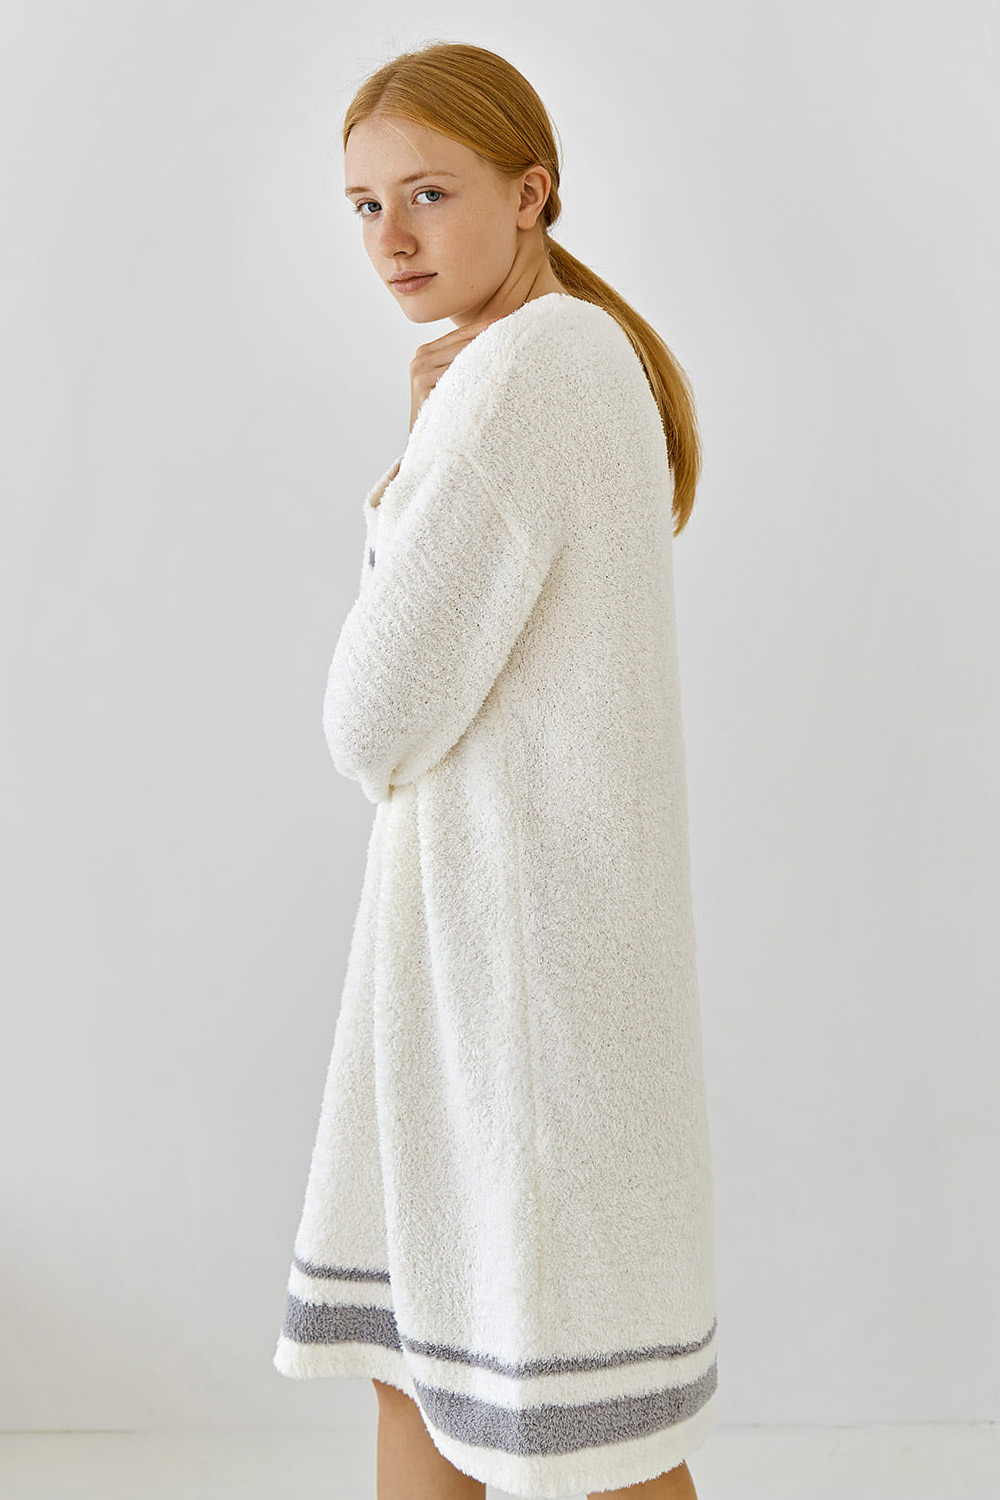 코즈넉 KOZNOK - 크리미 수면 니트 겨울 여성 원피스 잠옷